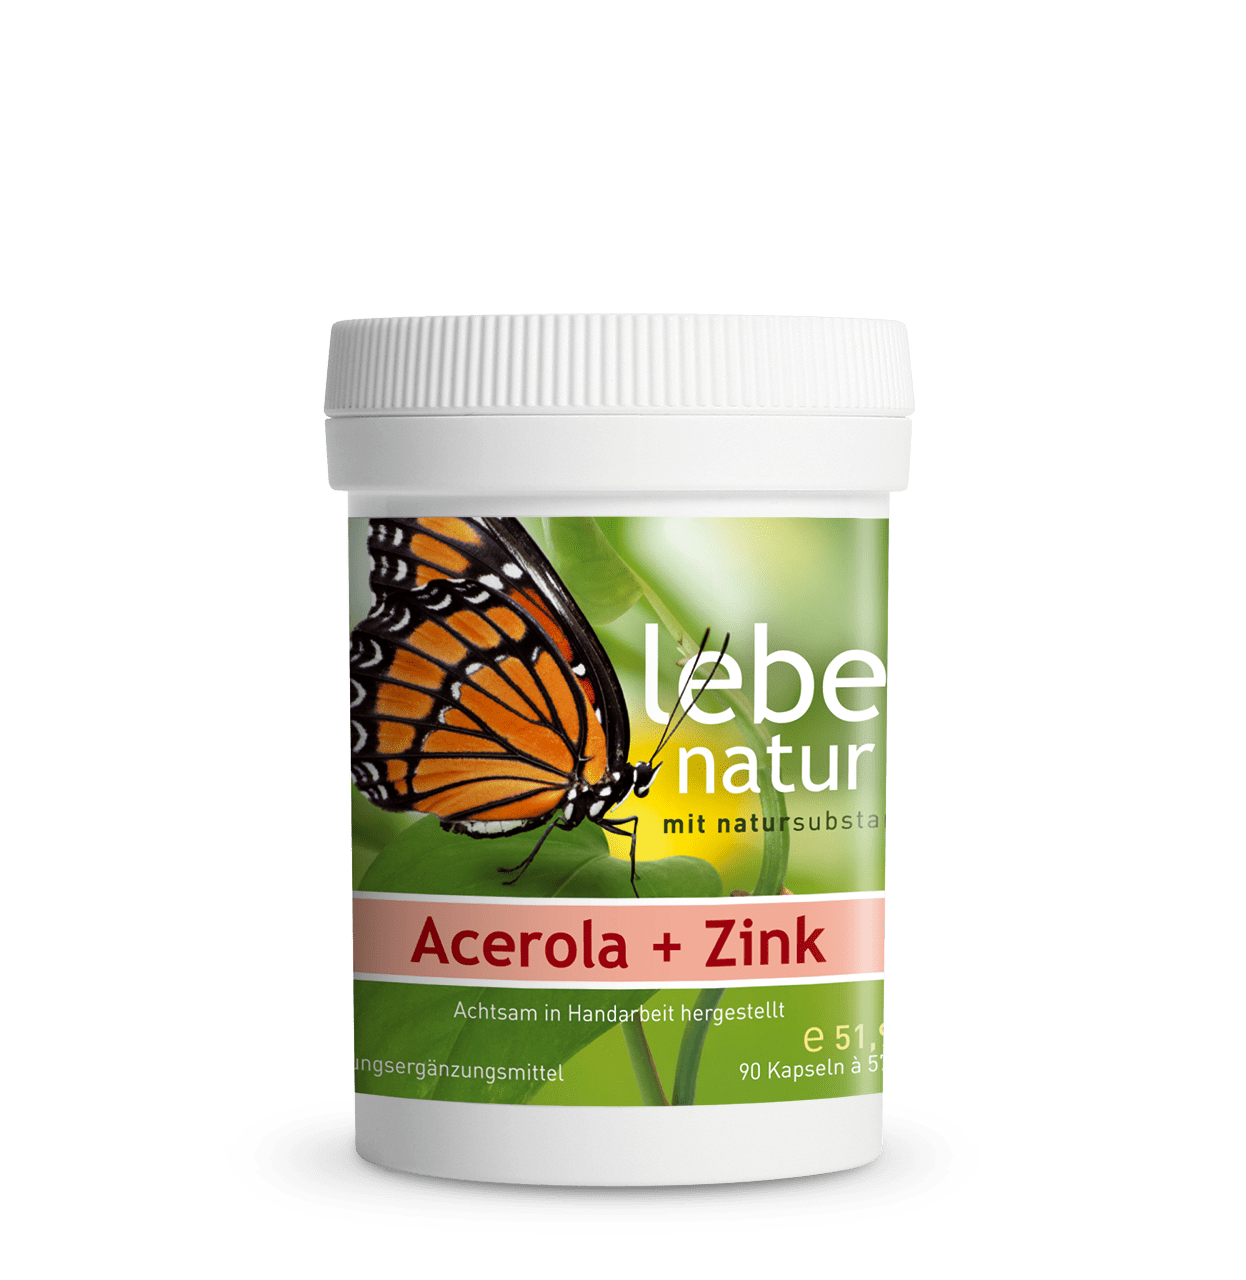 Acerola + Zink – DOSE 90 KAPSEL à 577 mg